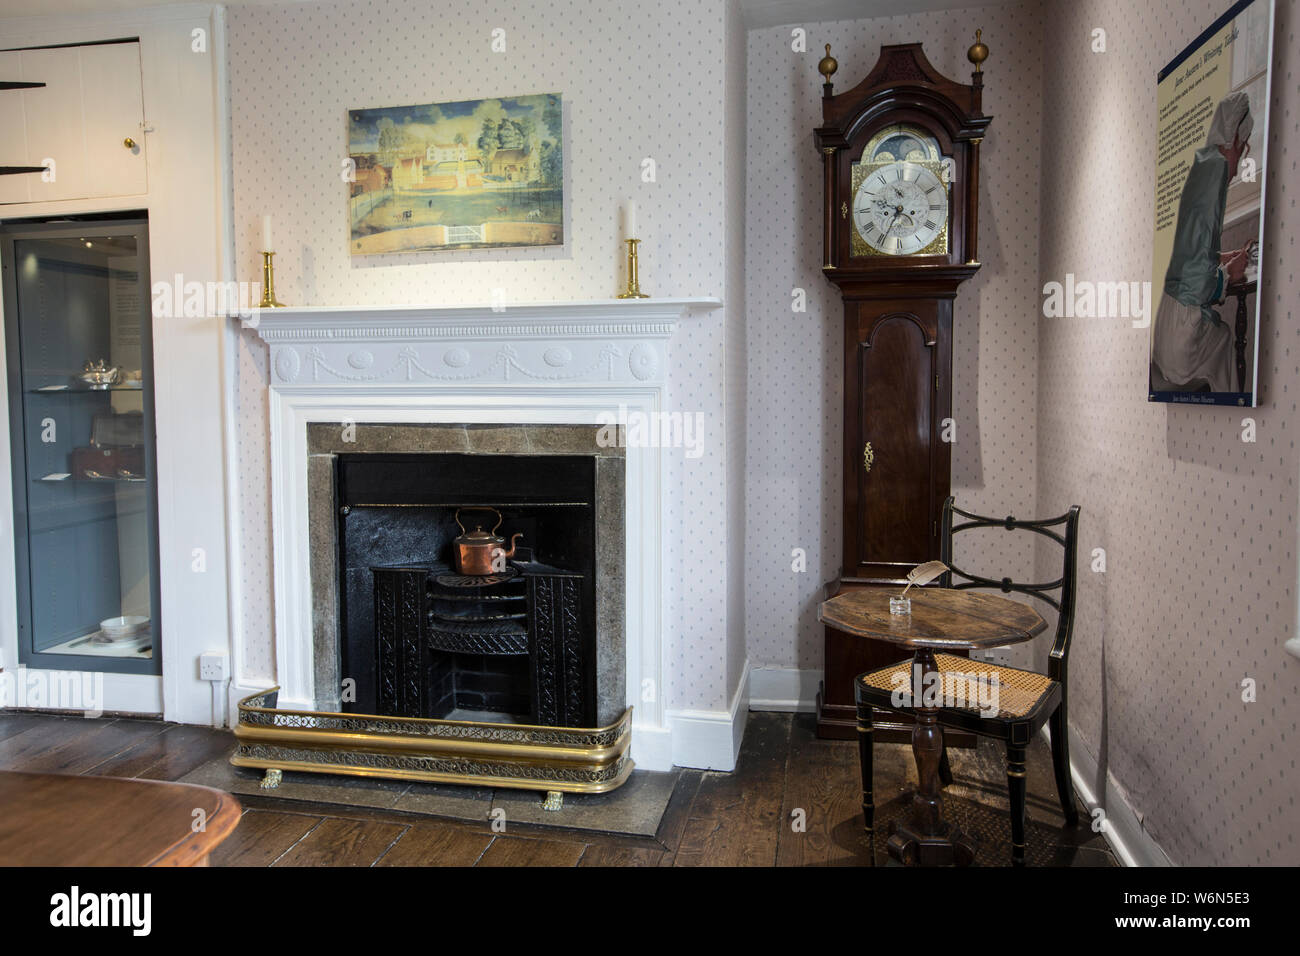 Jane Austen's ancien brique rouge accueil sur la succession, Chawton Hampshire, England, UK, elle s'y installe en 1809 pour les huit dernières années de sa vie. Banque D'Images